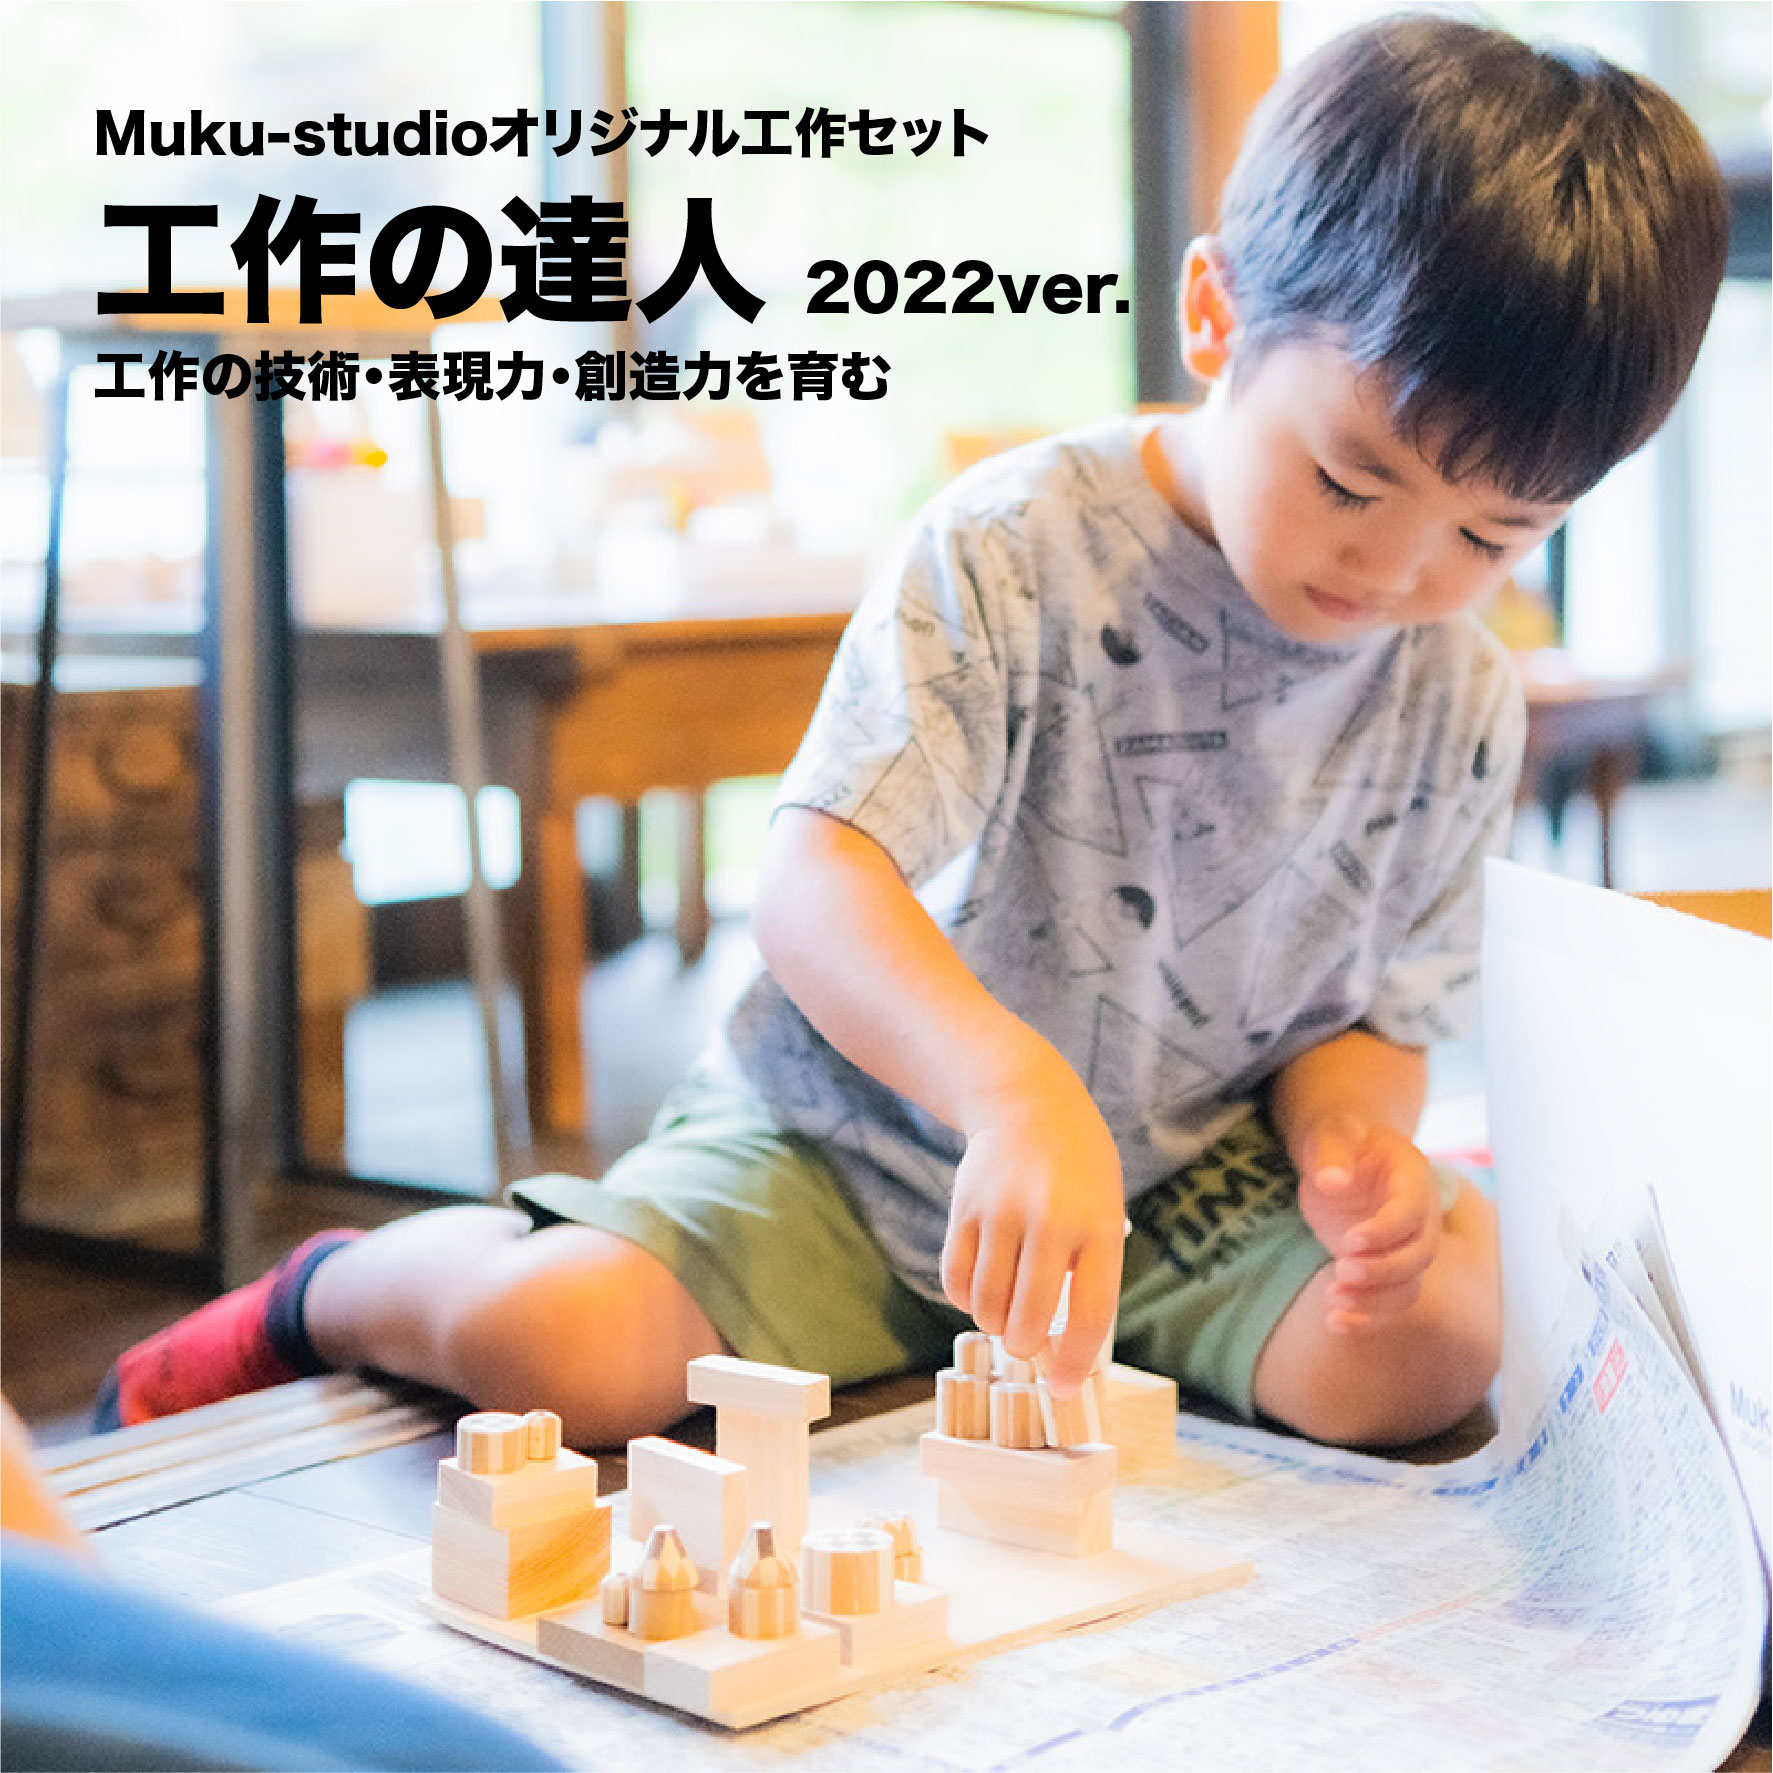 3月1日より発送開始！Muku-studioオリジナル工作キット『工作の達人2022』